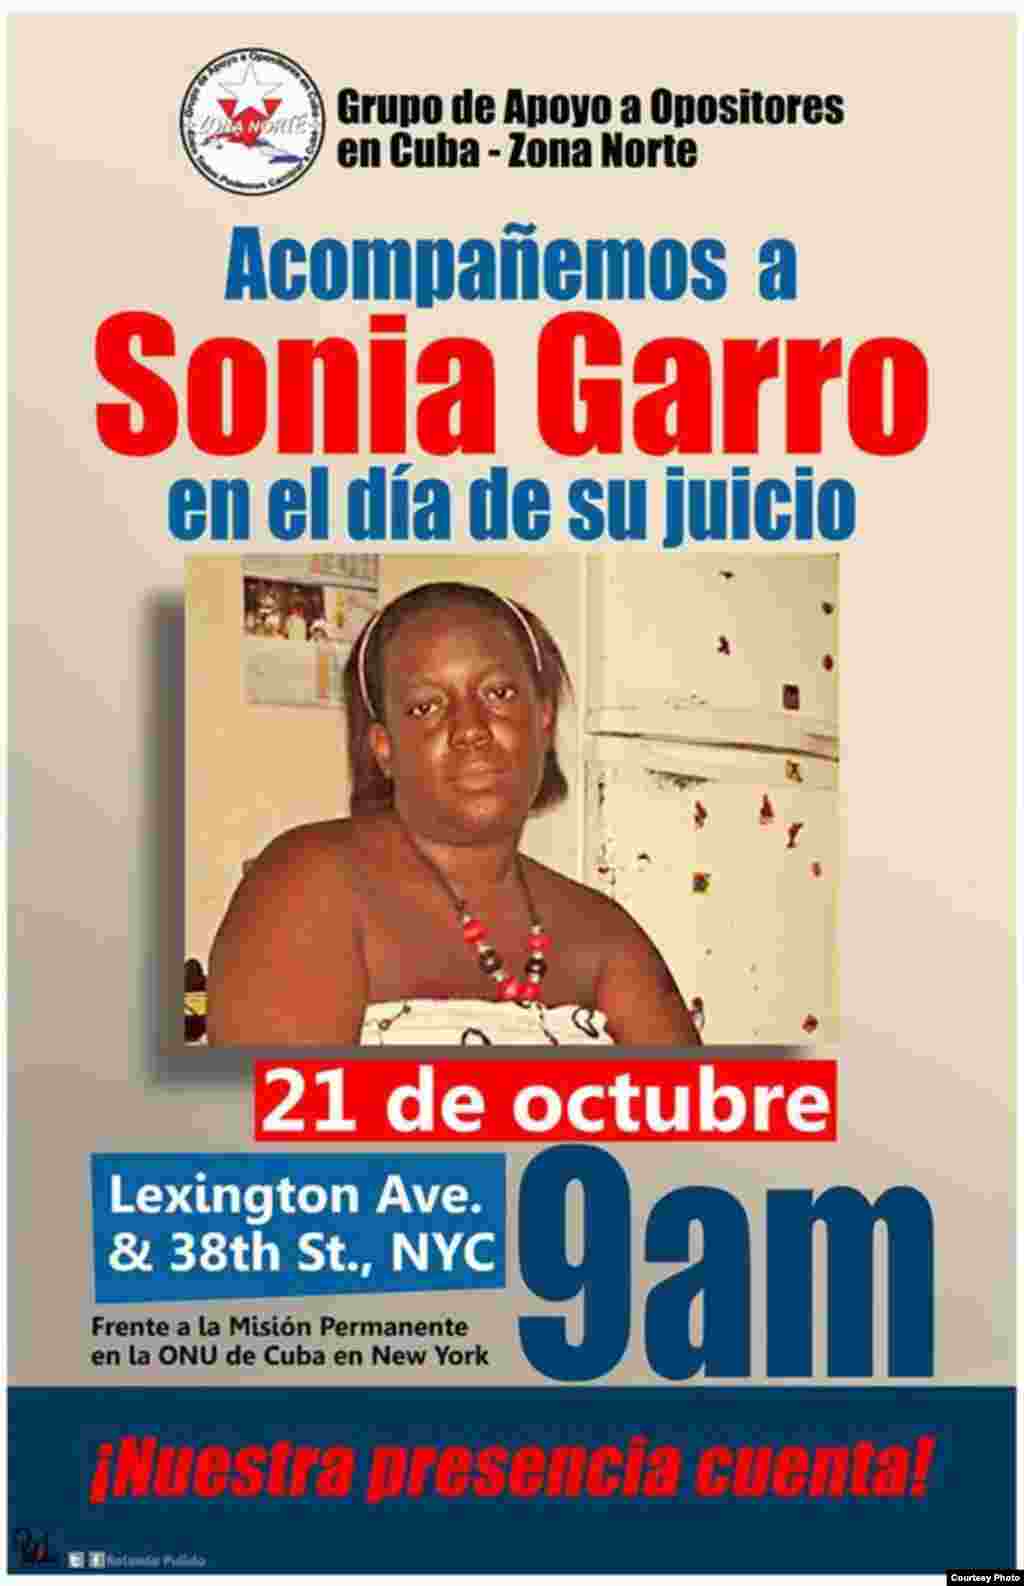 Cartel promocional del evento " Acompañemos a Sonia Garro en el día de su juicio", convocado para la mañana del 21 de octubre.